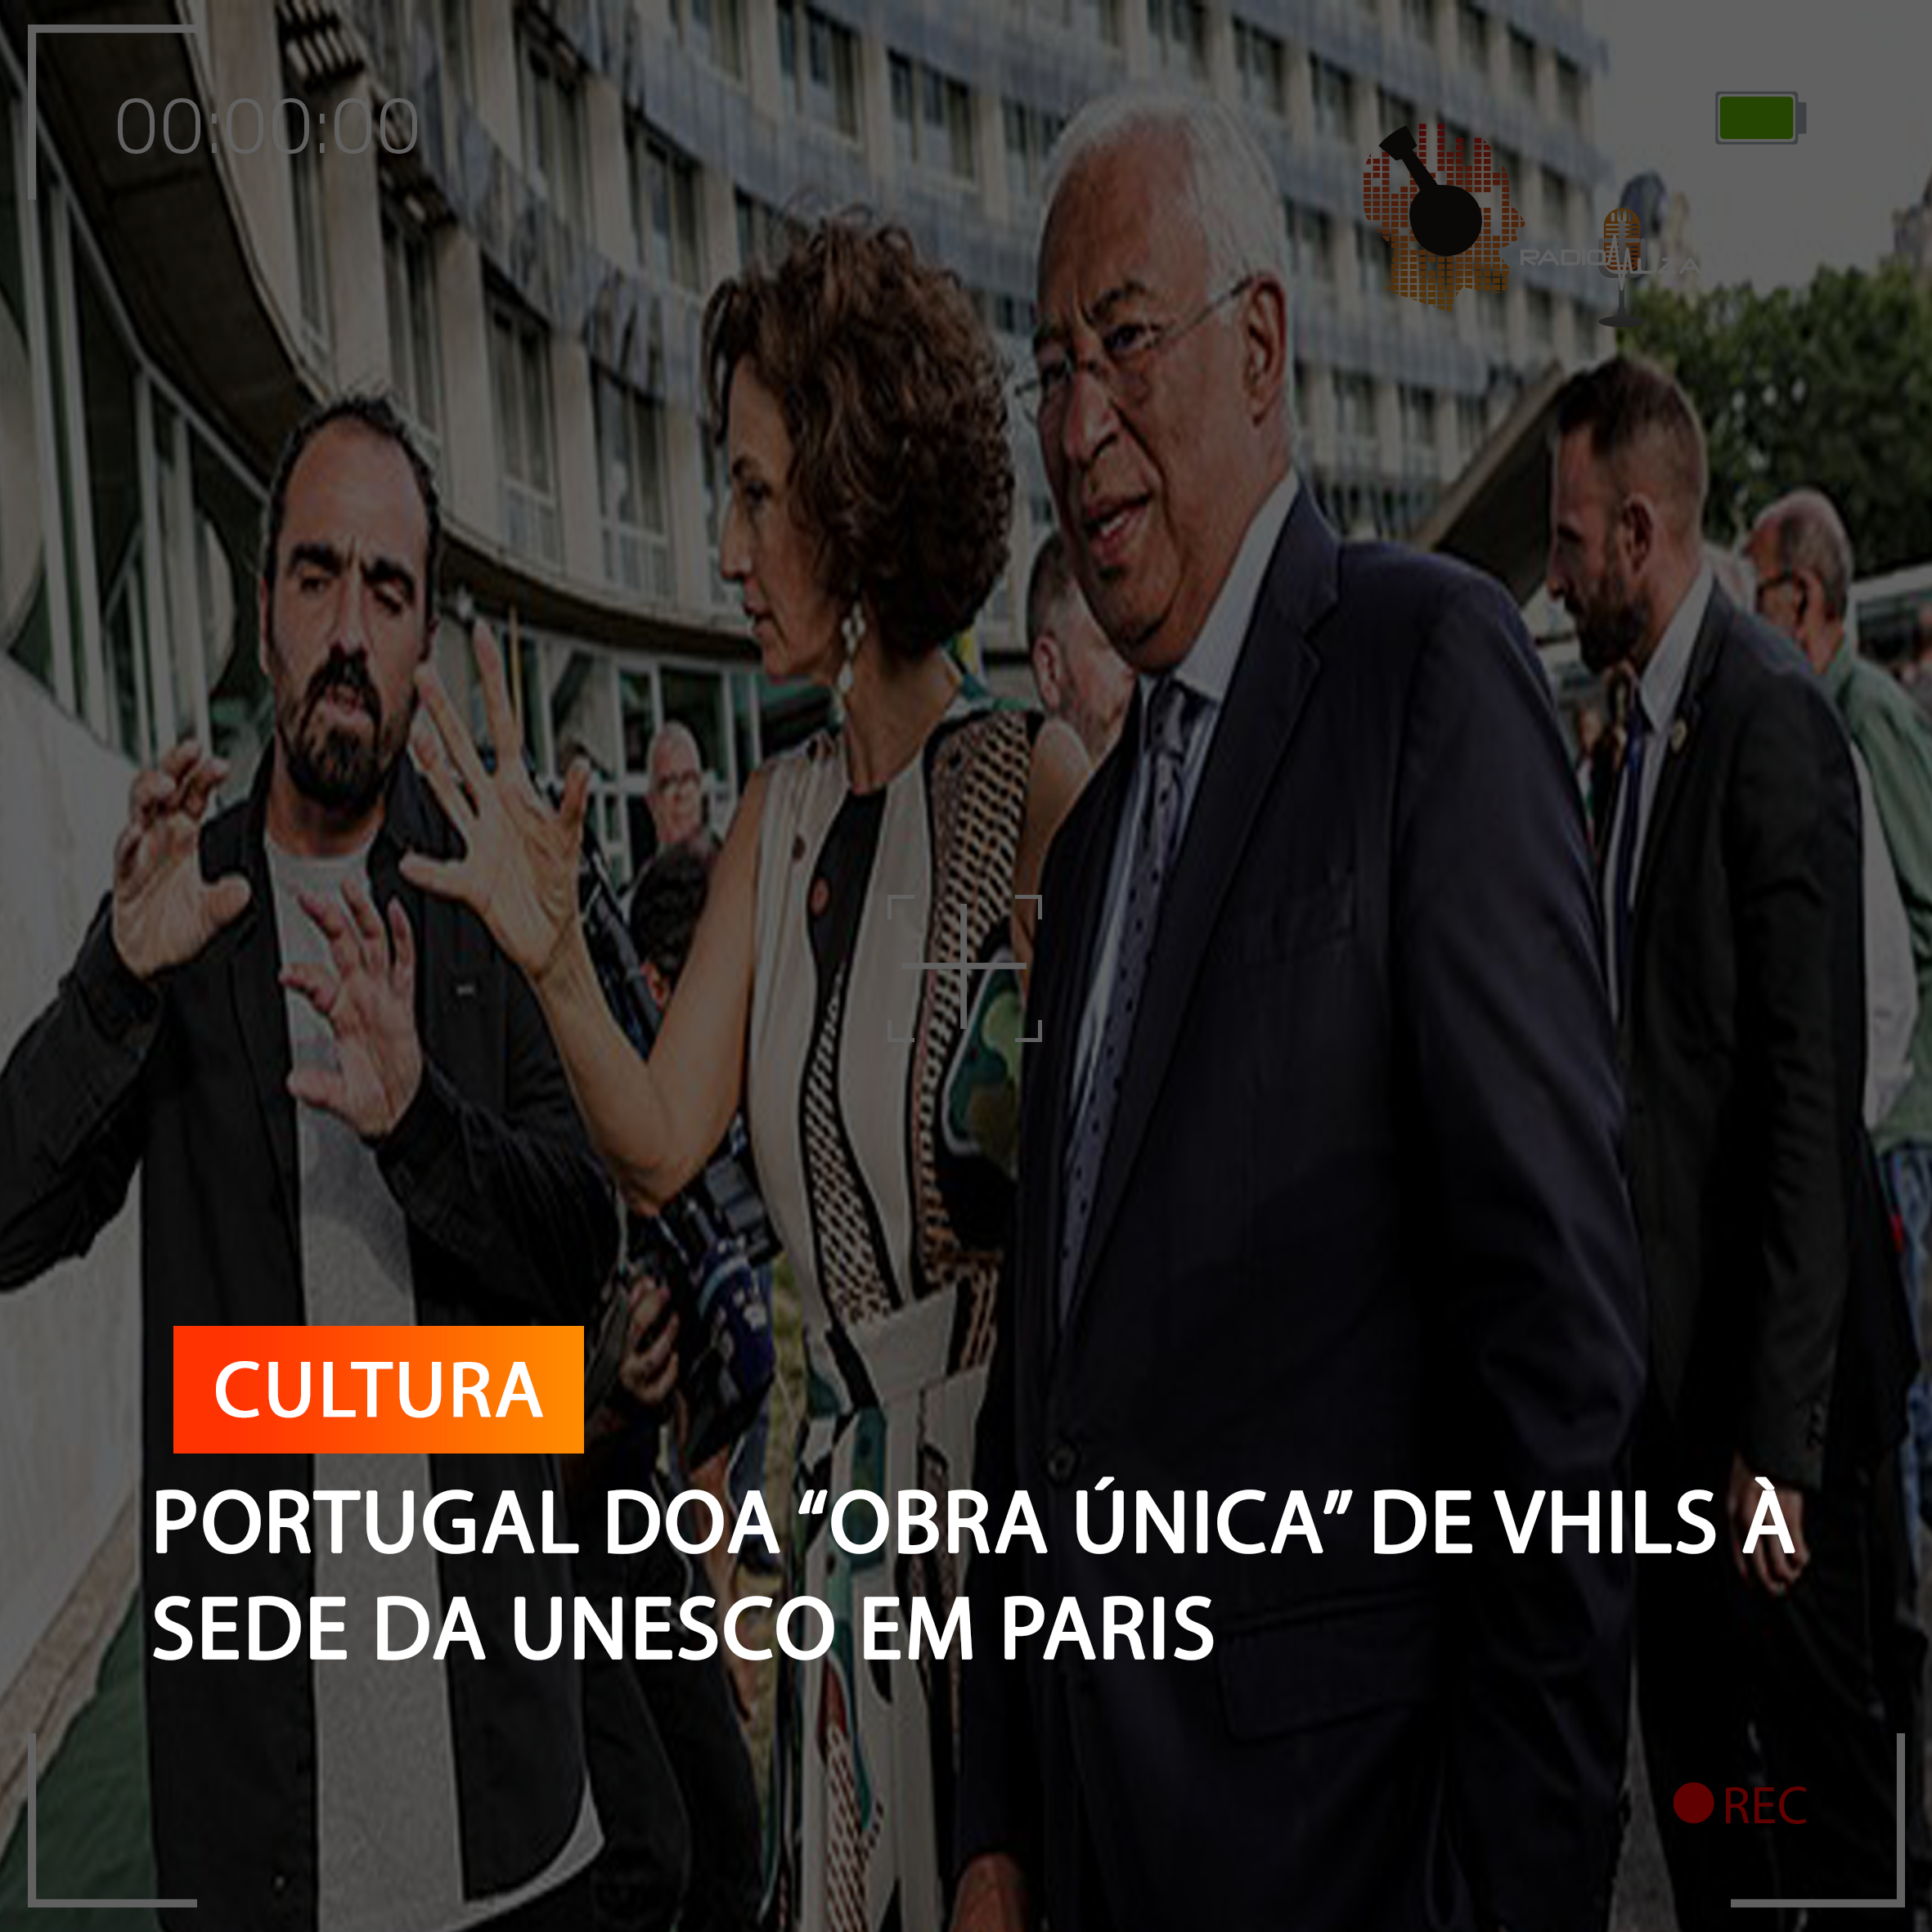  PORTUGAL DOA “OBRA ÚNICA” DE VHILS À SEDE DA UNESCO EM PARIS